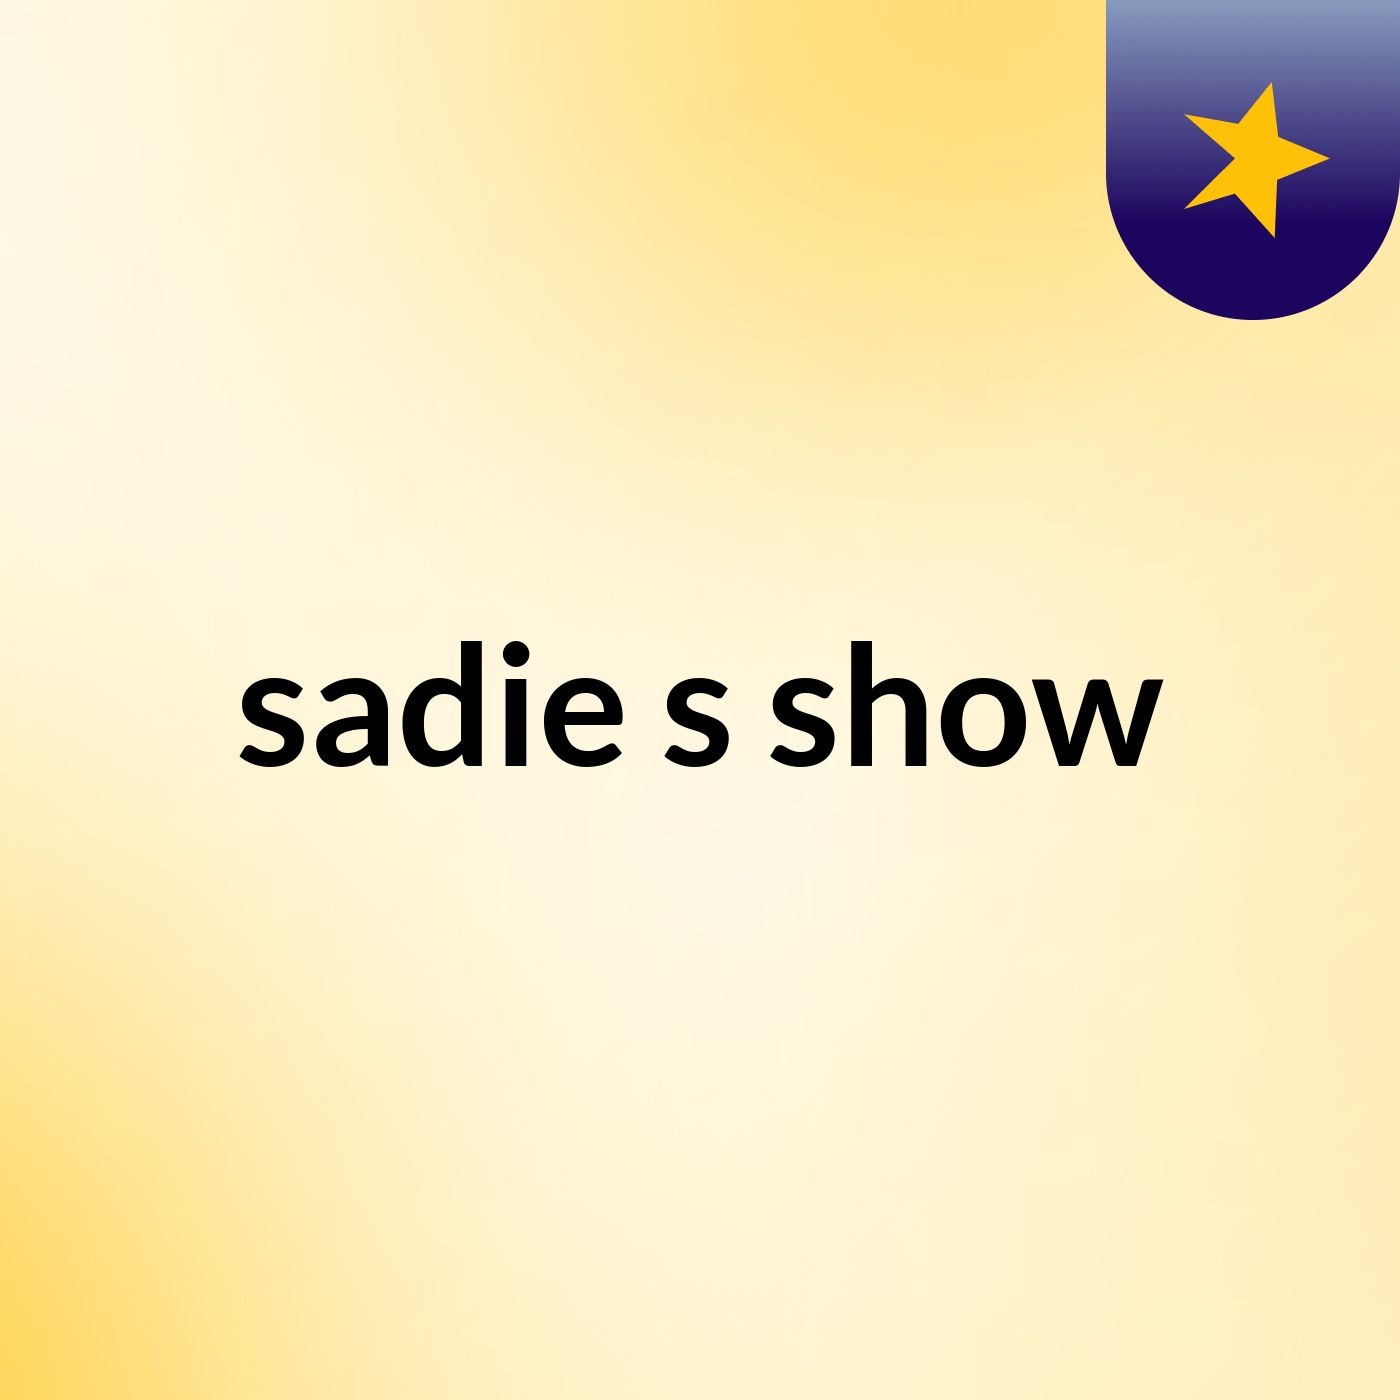 sadie's show